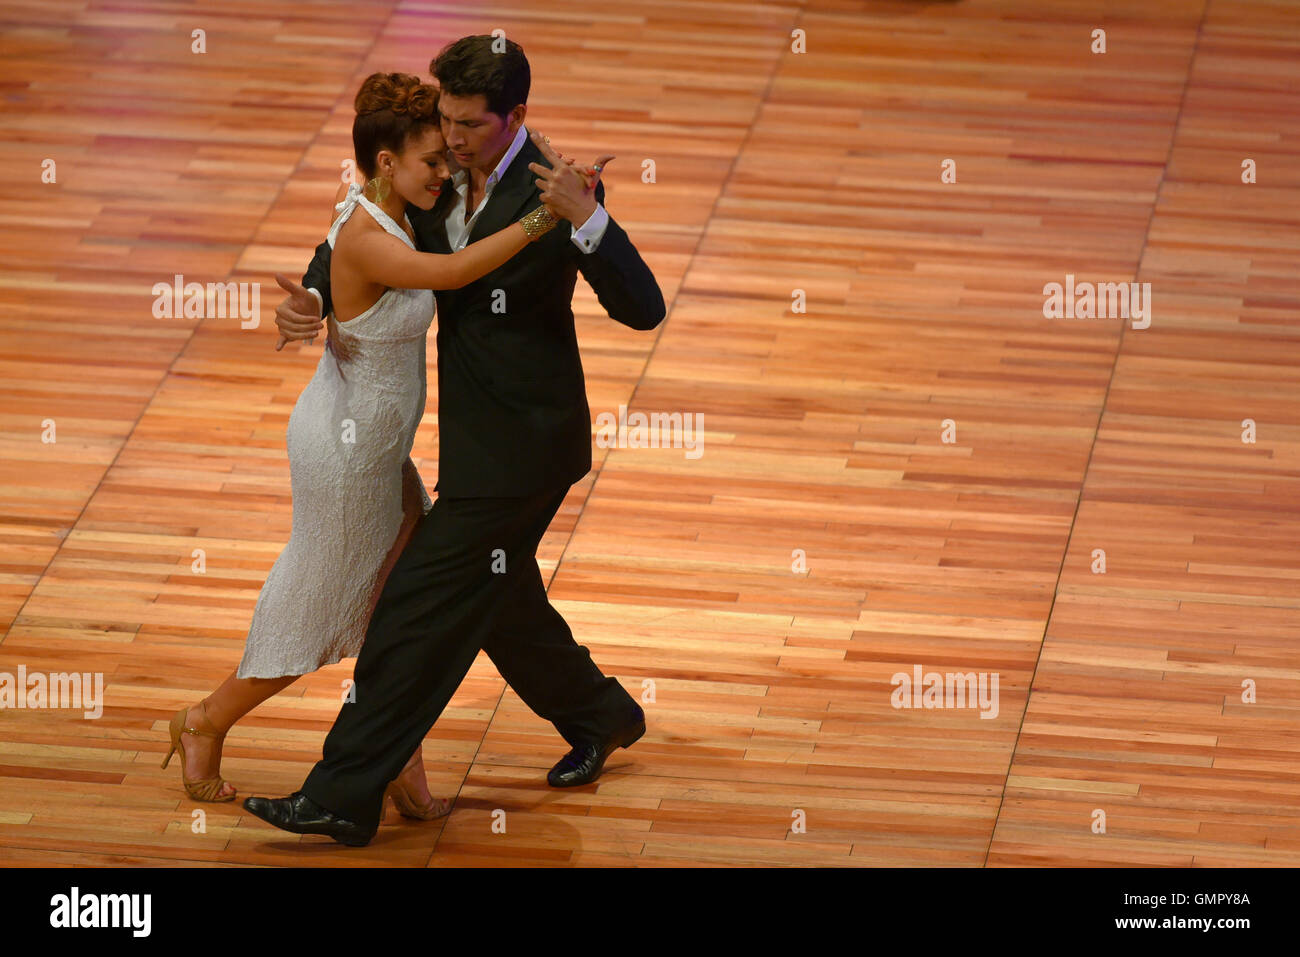 Buenos Aires, Argentina - 22 AGO 2016: giovane prende parte al round del Tango, durante il Ballo del Tango World Cup. Foto Stock